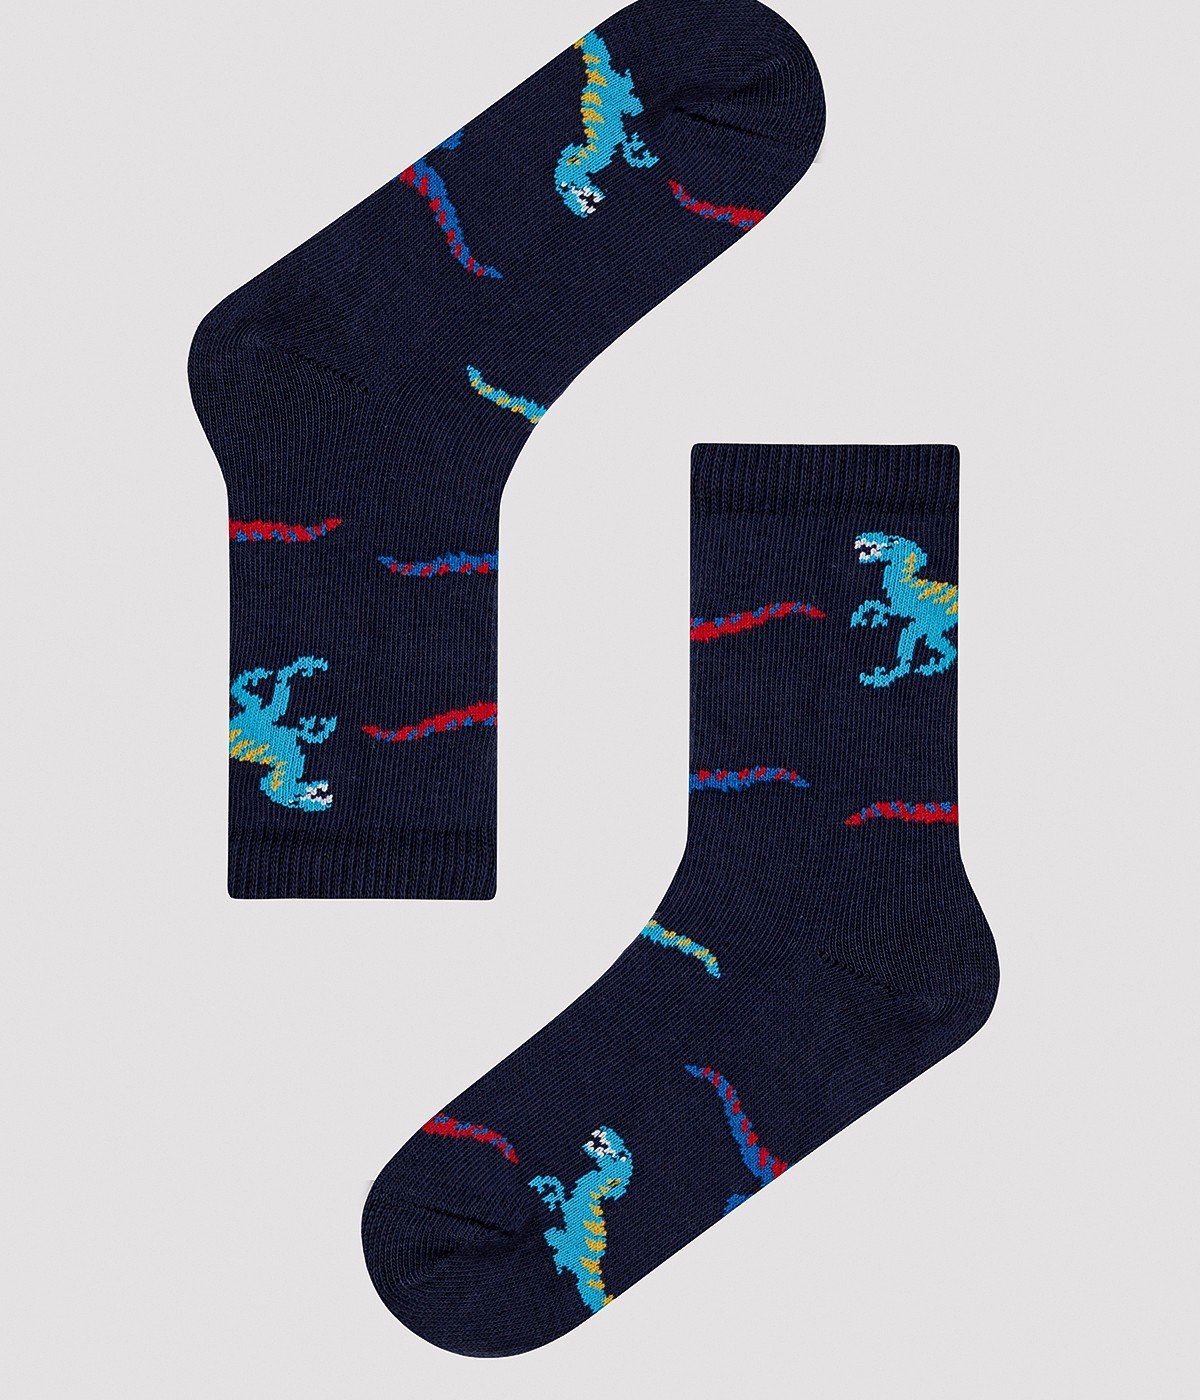 Boys Fun Dinosaur 4in1 Socks